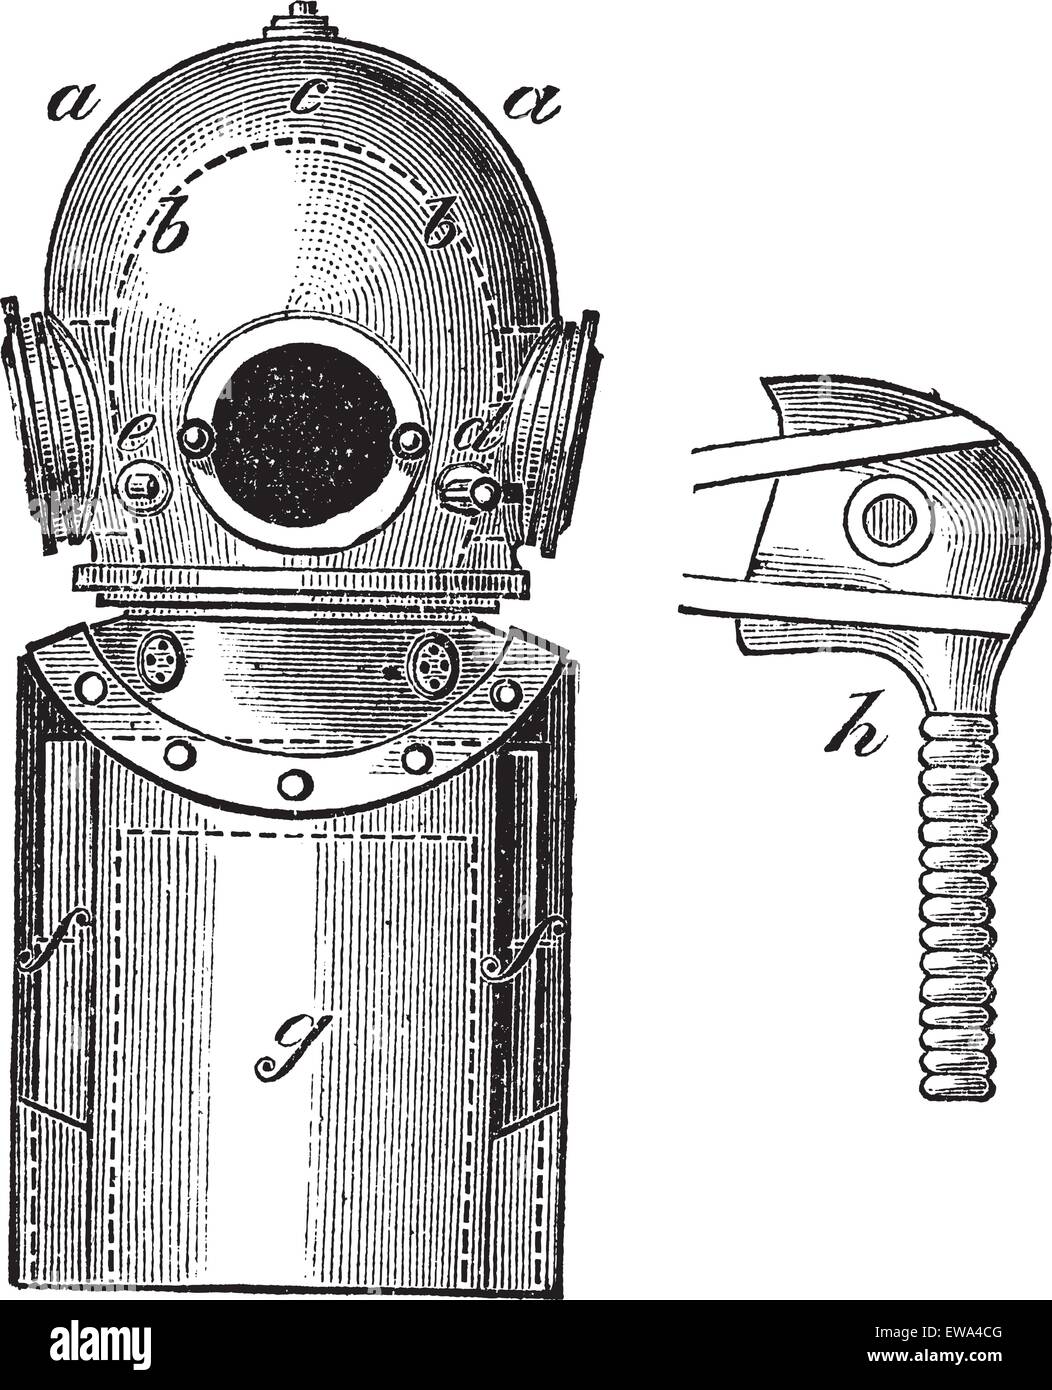 Superficie-fornito di attrezzature subacquee, vintage illustrazioni incise. Trousset enciclopedia (1886 - 1891). Illustrazione Vettoriale